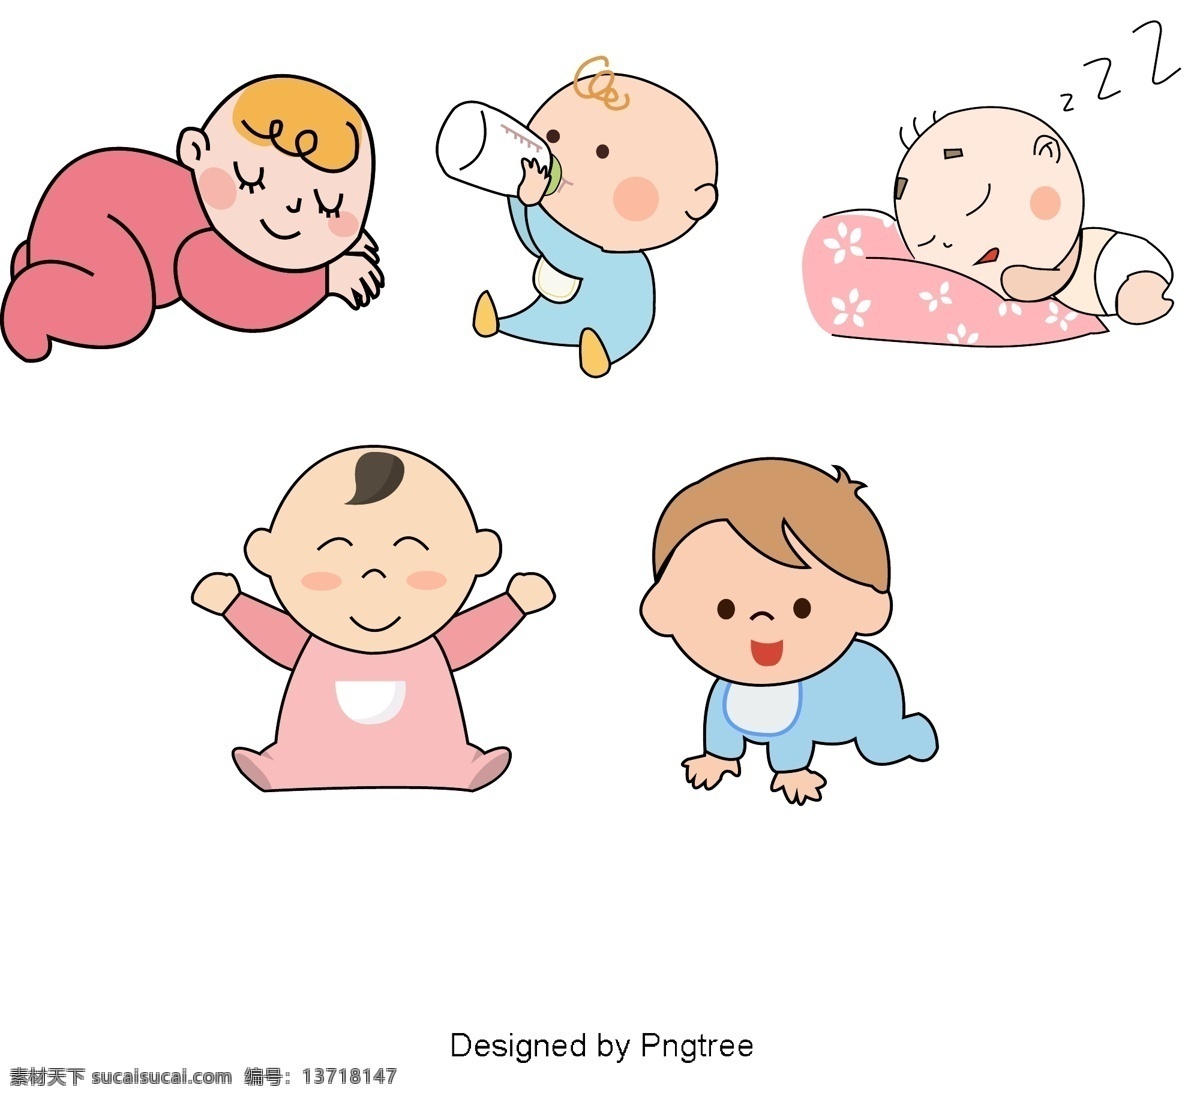 简单 卡通 婴儿用品 图案 手 黎明 婴儿 颜色 图形设计 材料供应 可爱 玩具 衣服 元素 风格